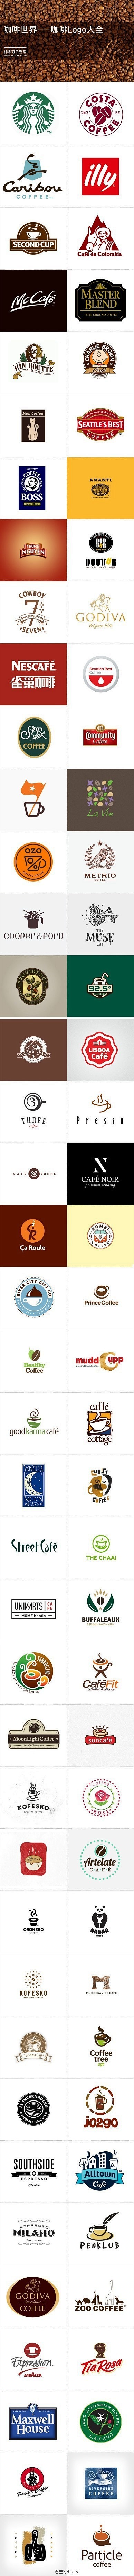 [【广告设计】咖啡Logo大全] 咖啡、...